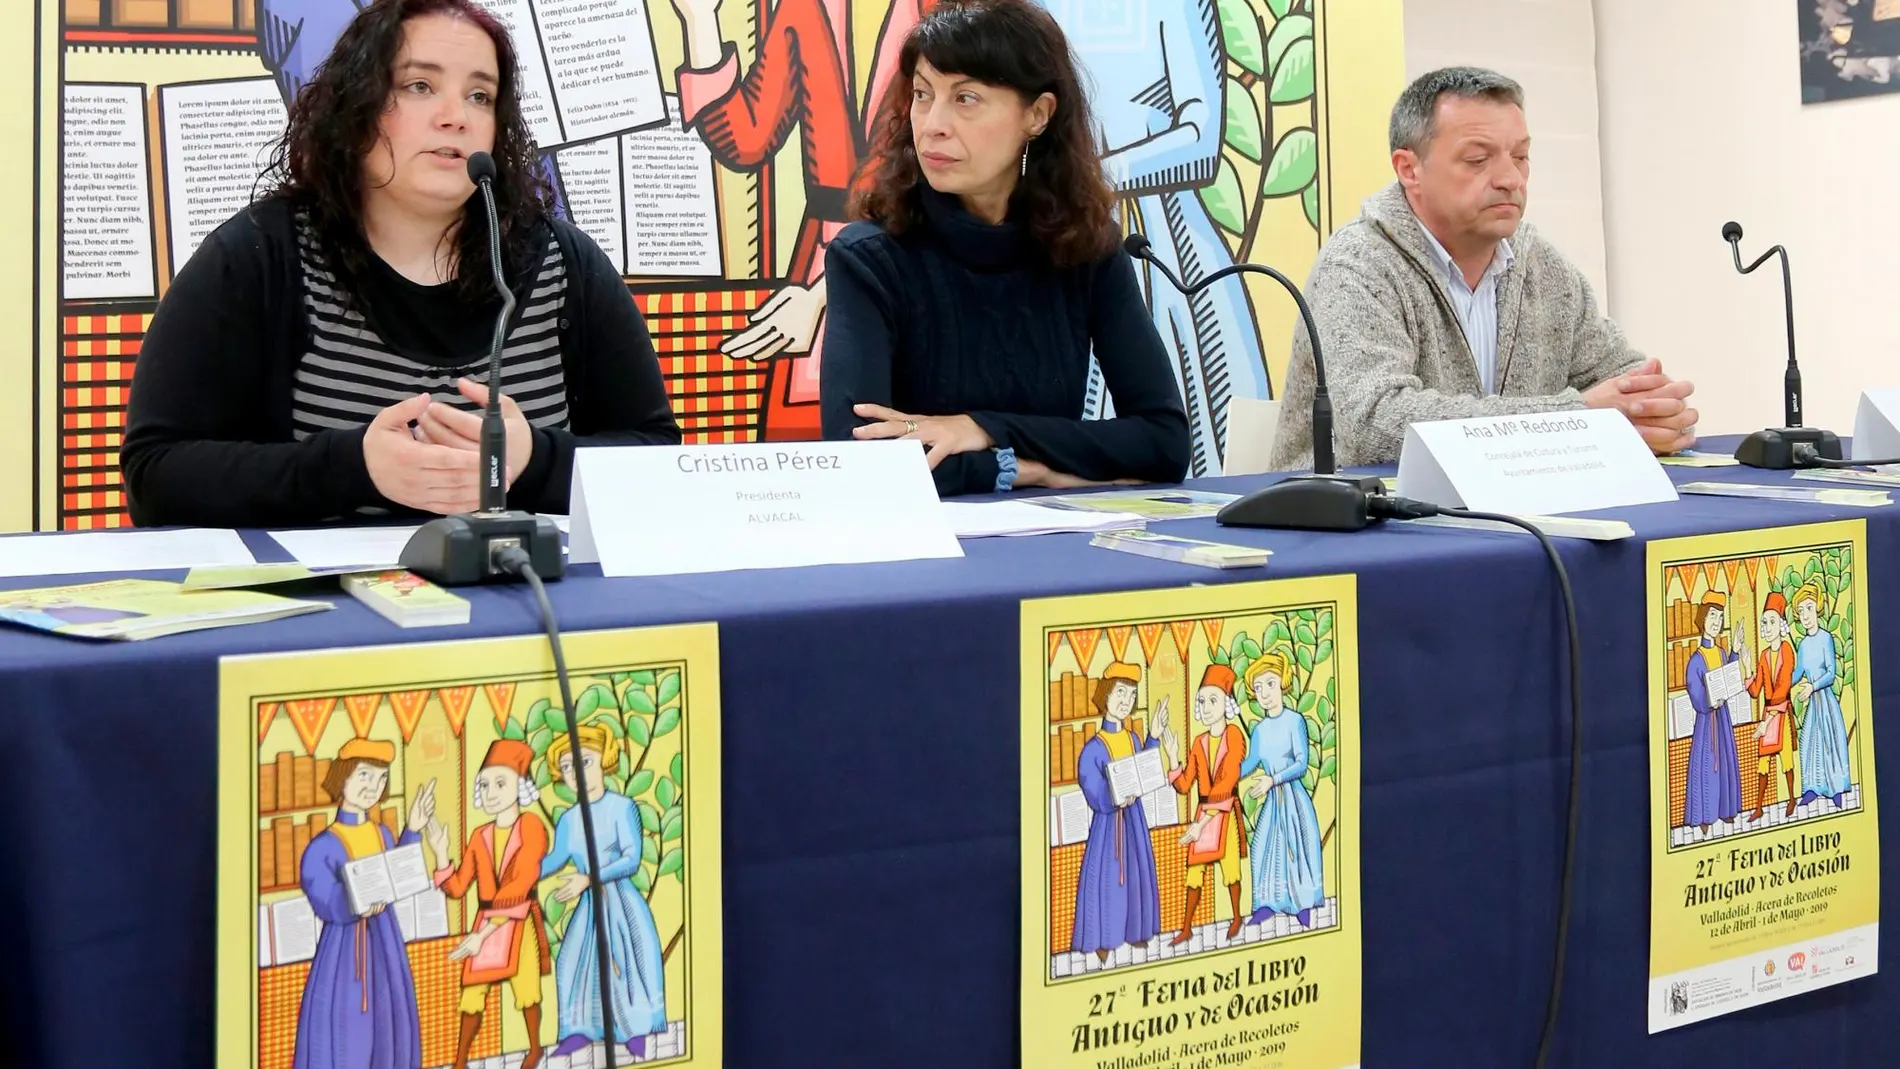 La concejala de Cultura y Turismo, Ana Redondo, estuvo acompañada por la presidente y vicepresidente de Alvacal, Cristina Pérez y Rafael Moral